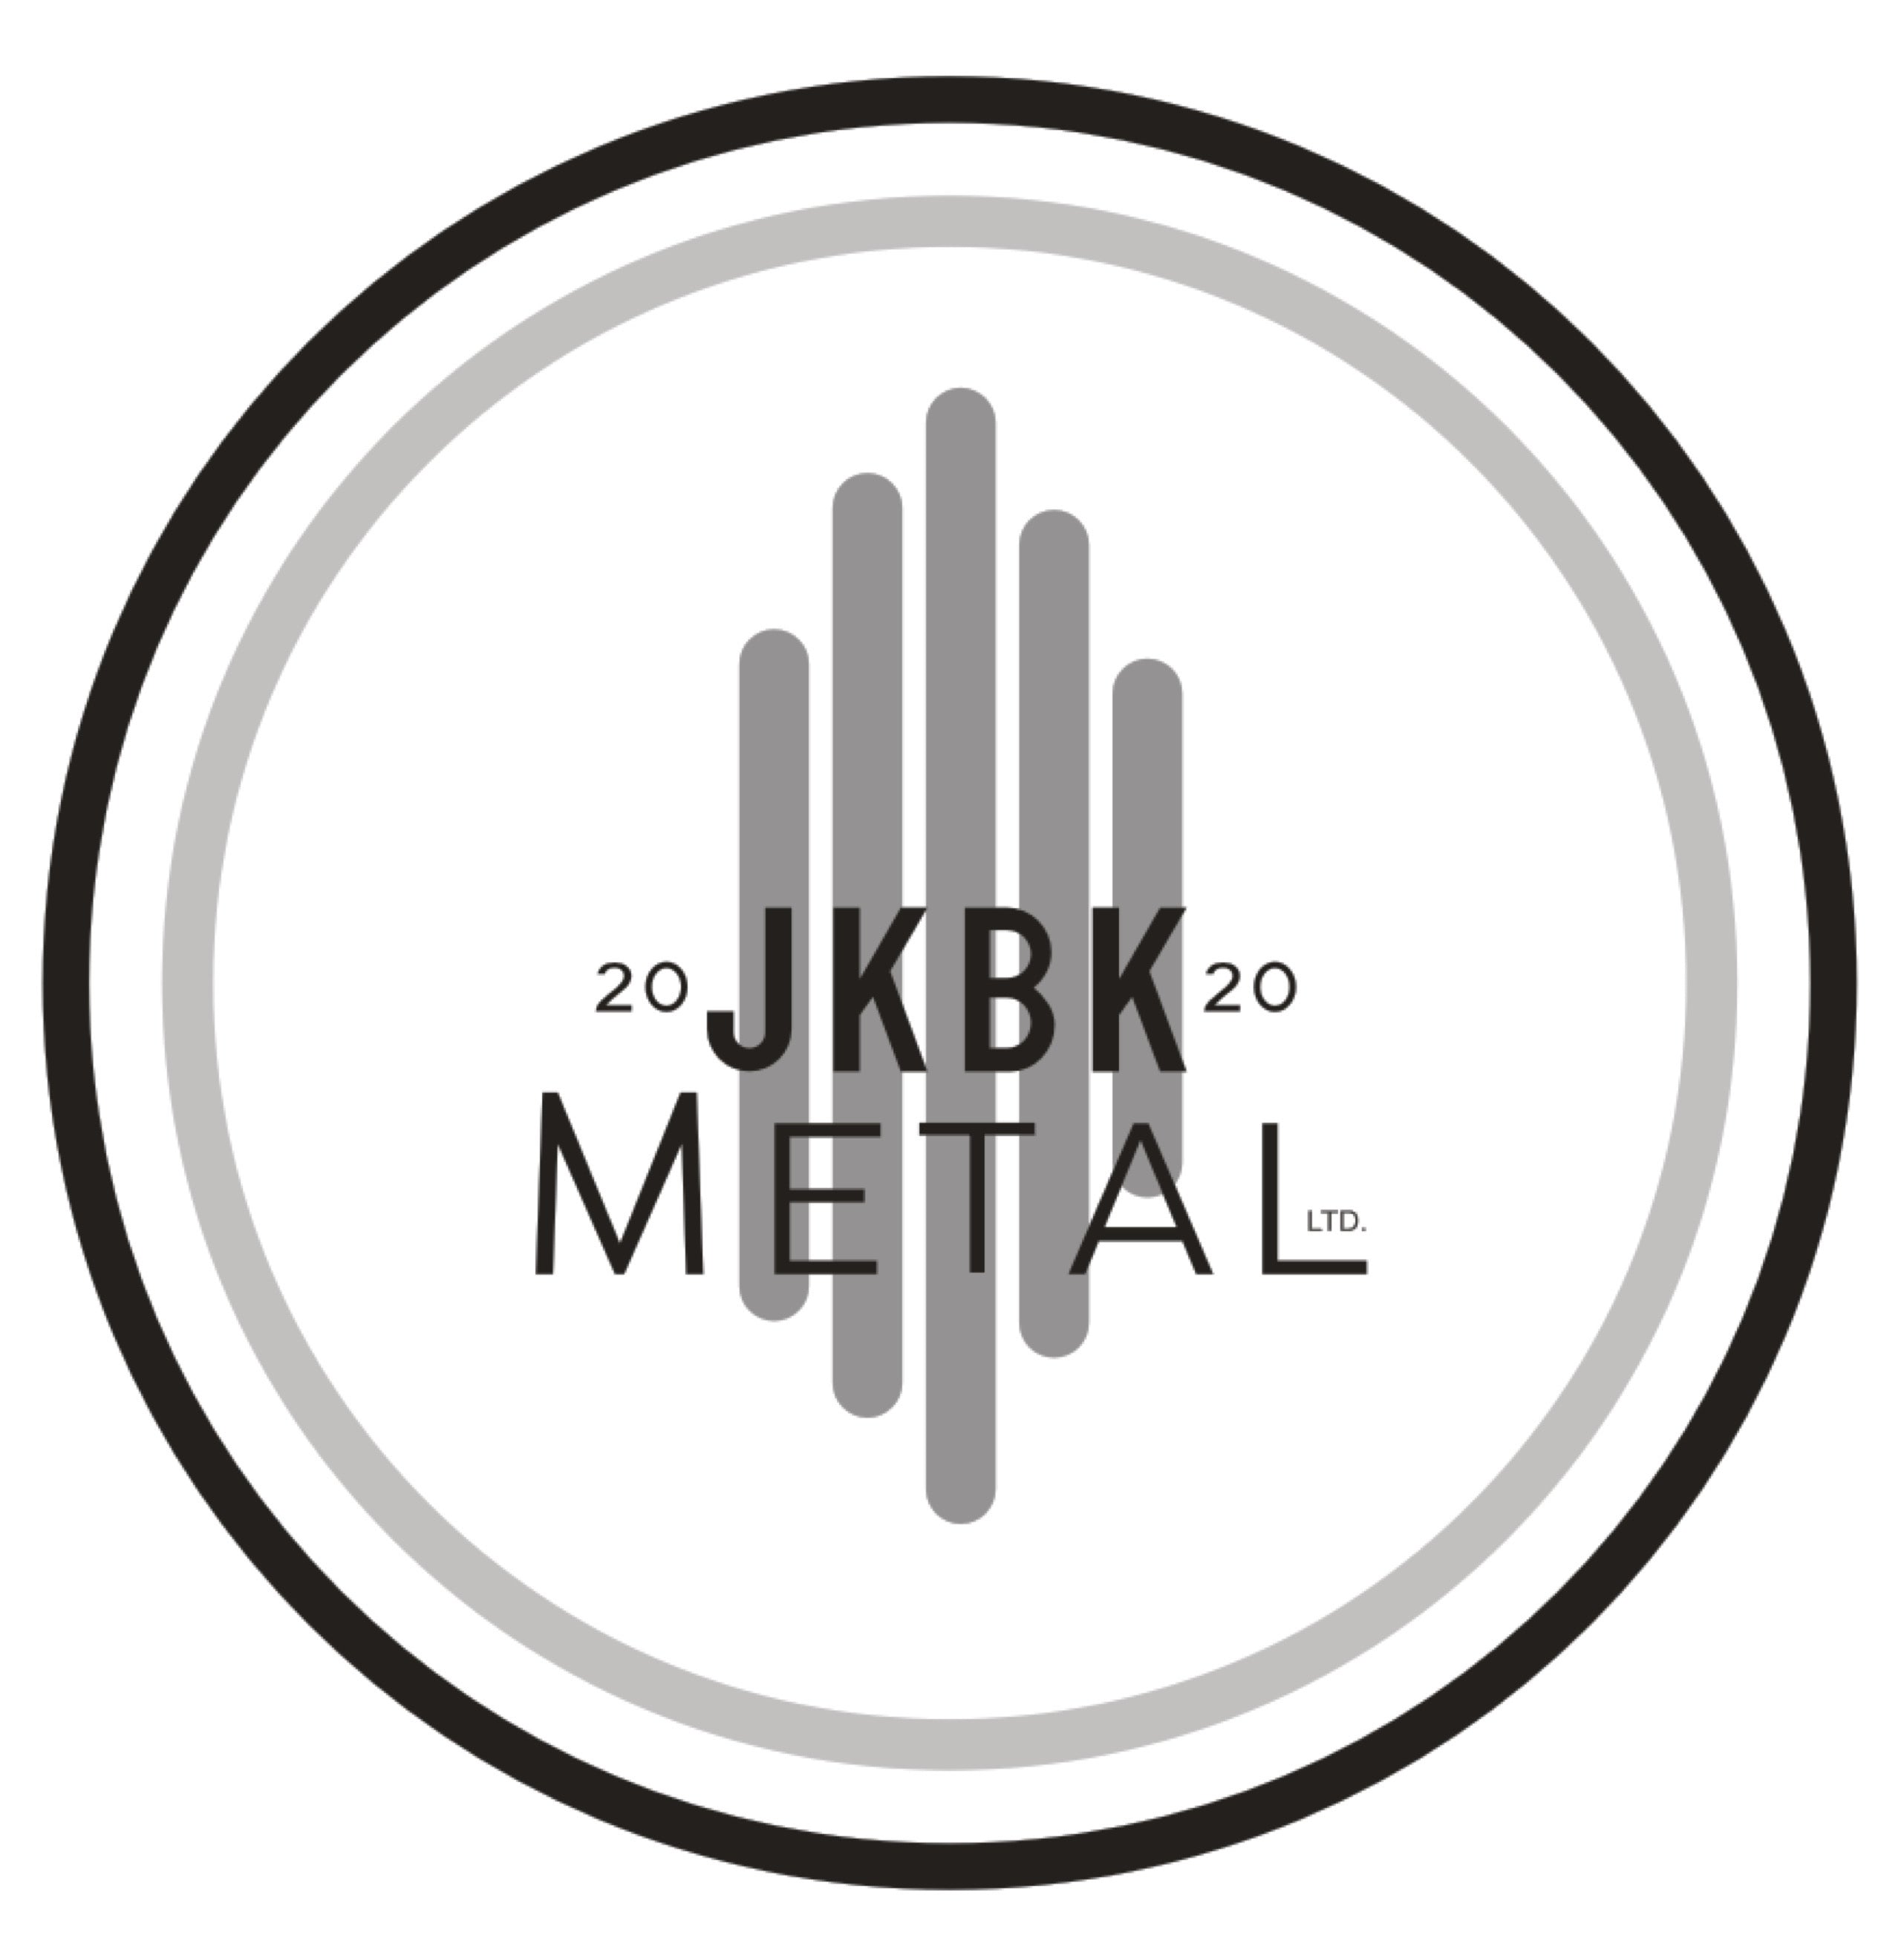 JKBK Metal Ltd.